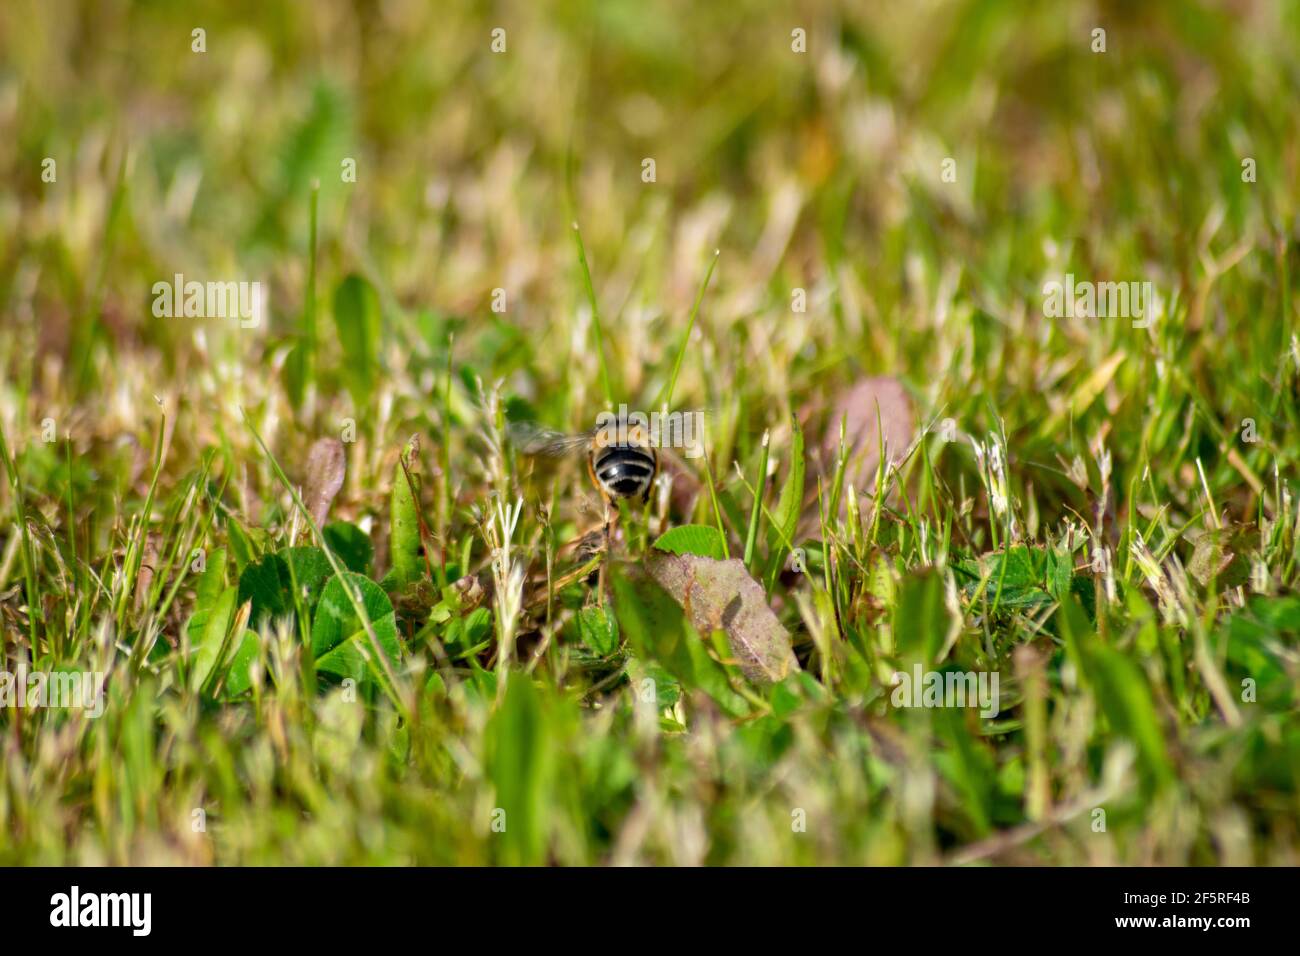 La polinolisation des abeilles avec une seule abeille survolant l'herbe verte Banque D'Images